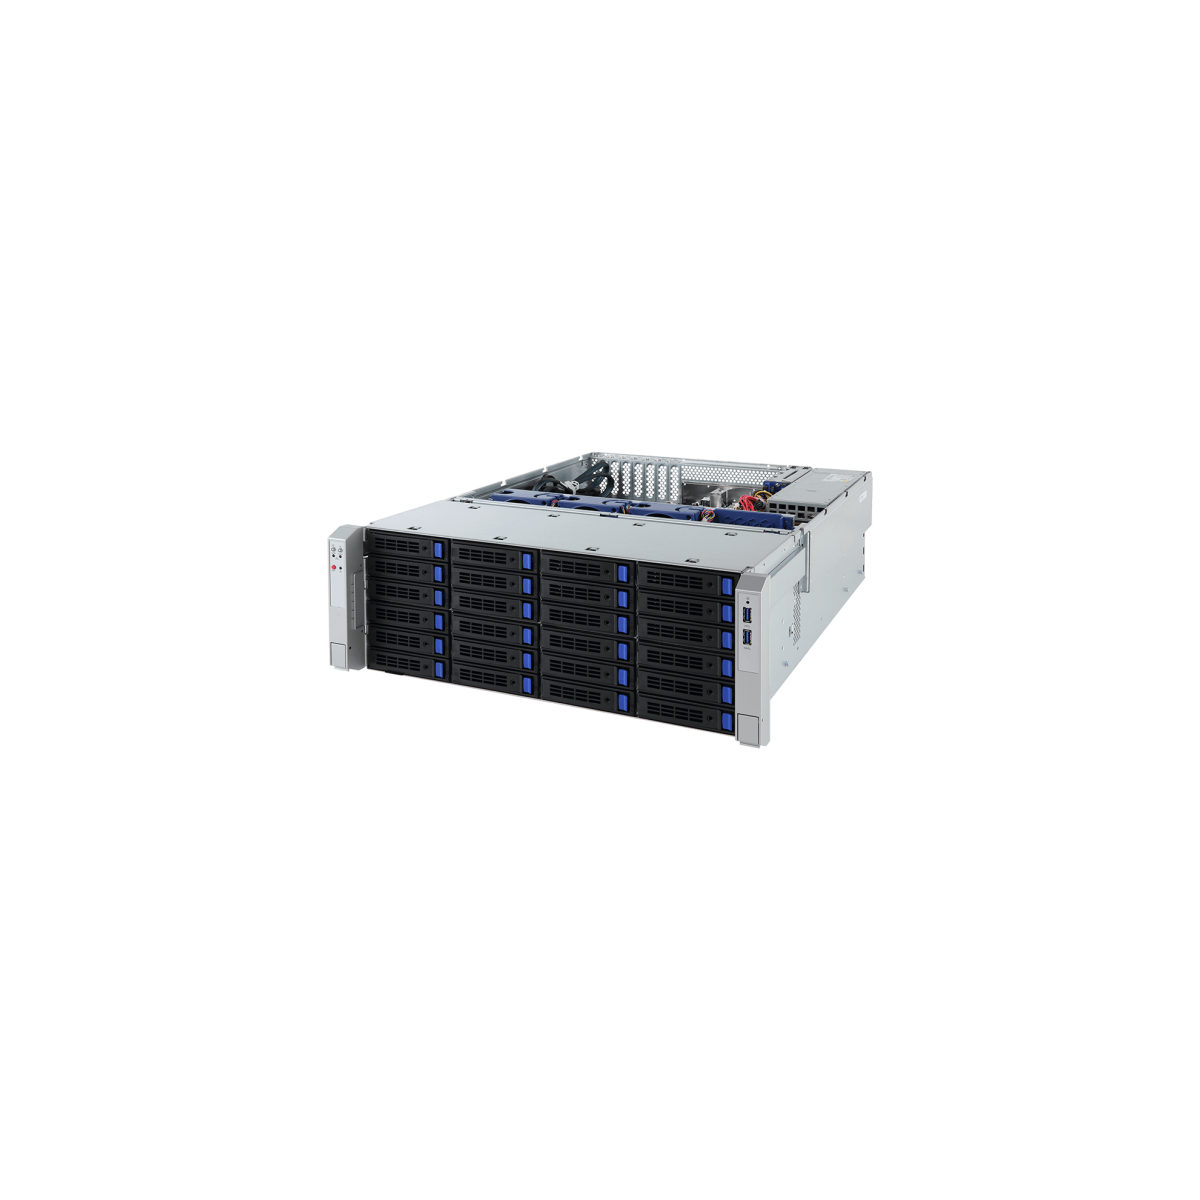 Gigabyte AMD Epyc 7002-7001 36-Bay UP Storage Server S451-Z30 rev. A00 - Barebone